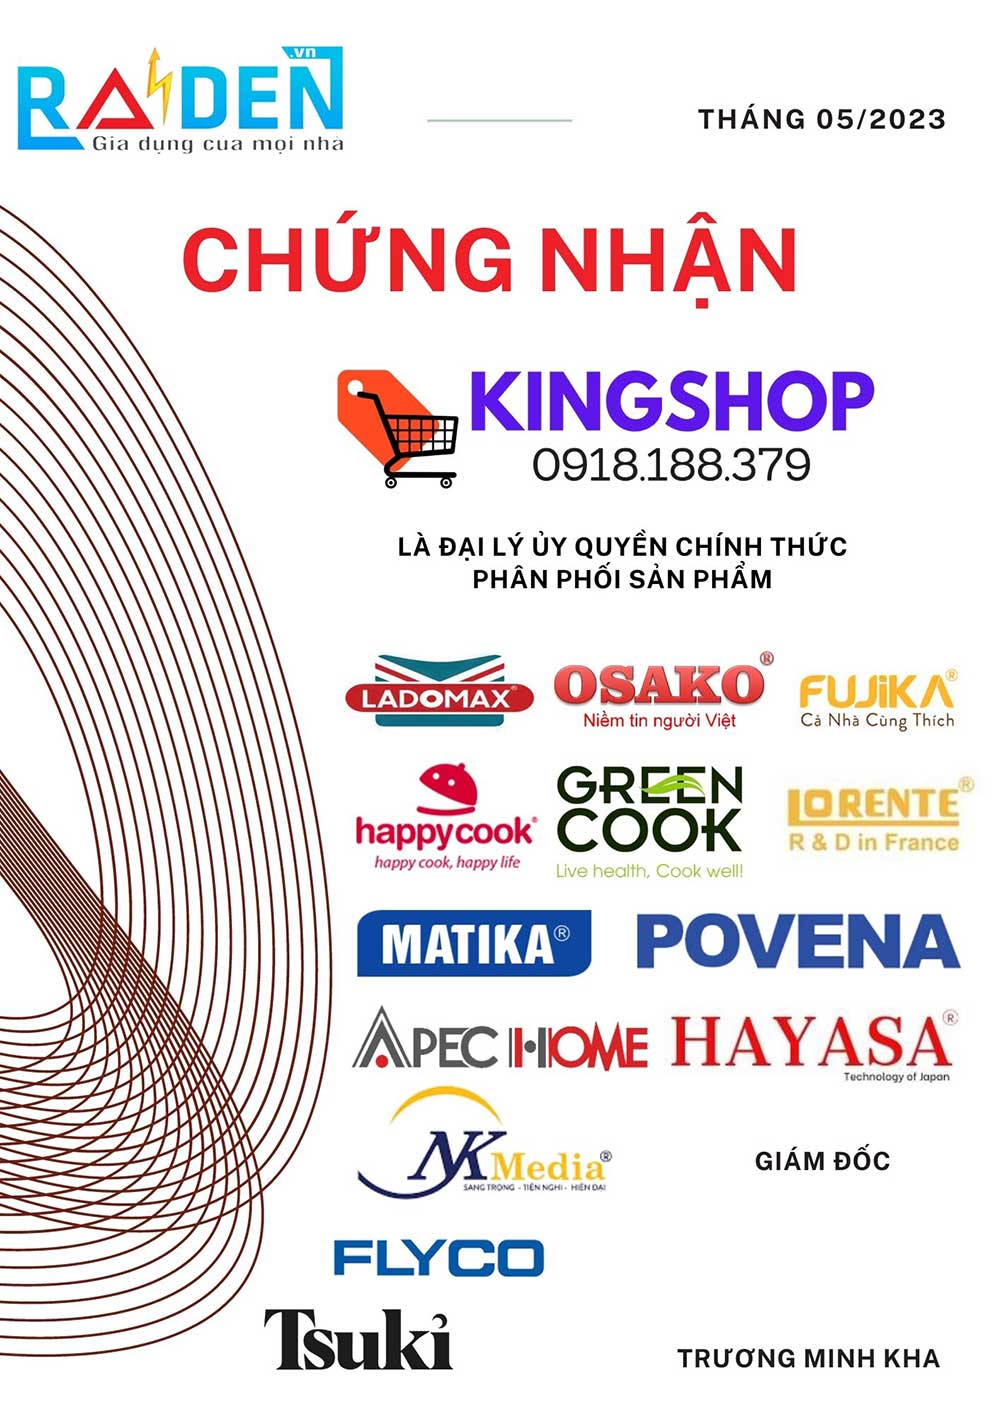 Nhà phân phối gia dụng Raiden Việt Nam chứng nhận King Shop là đại lý ủy quyền chính thức